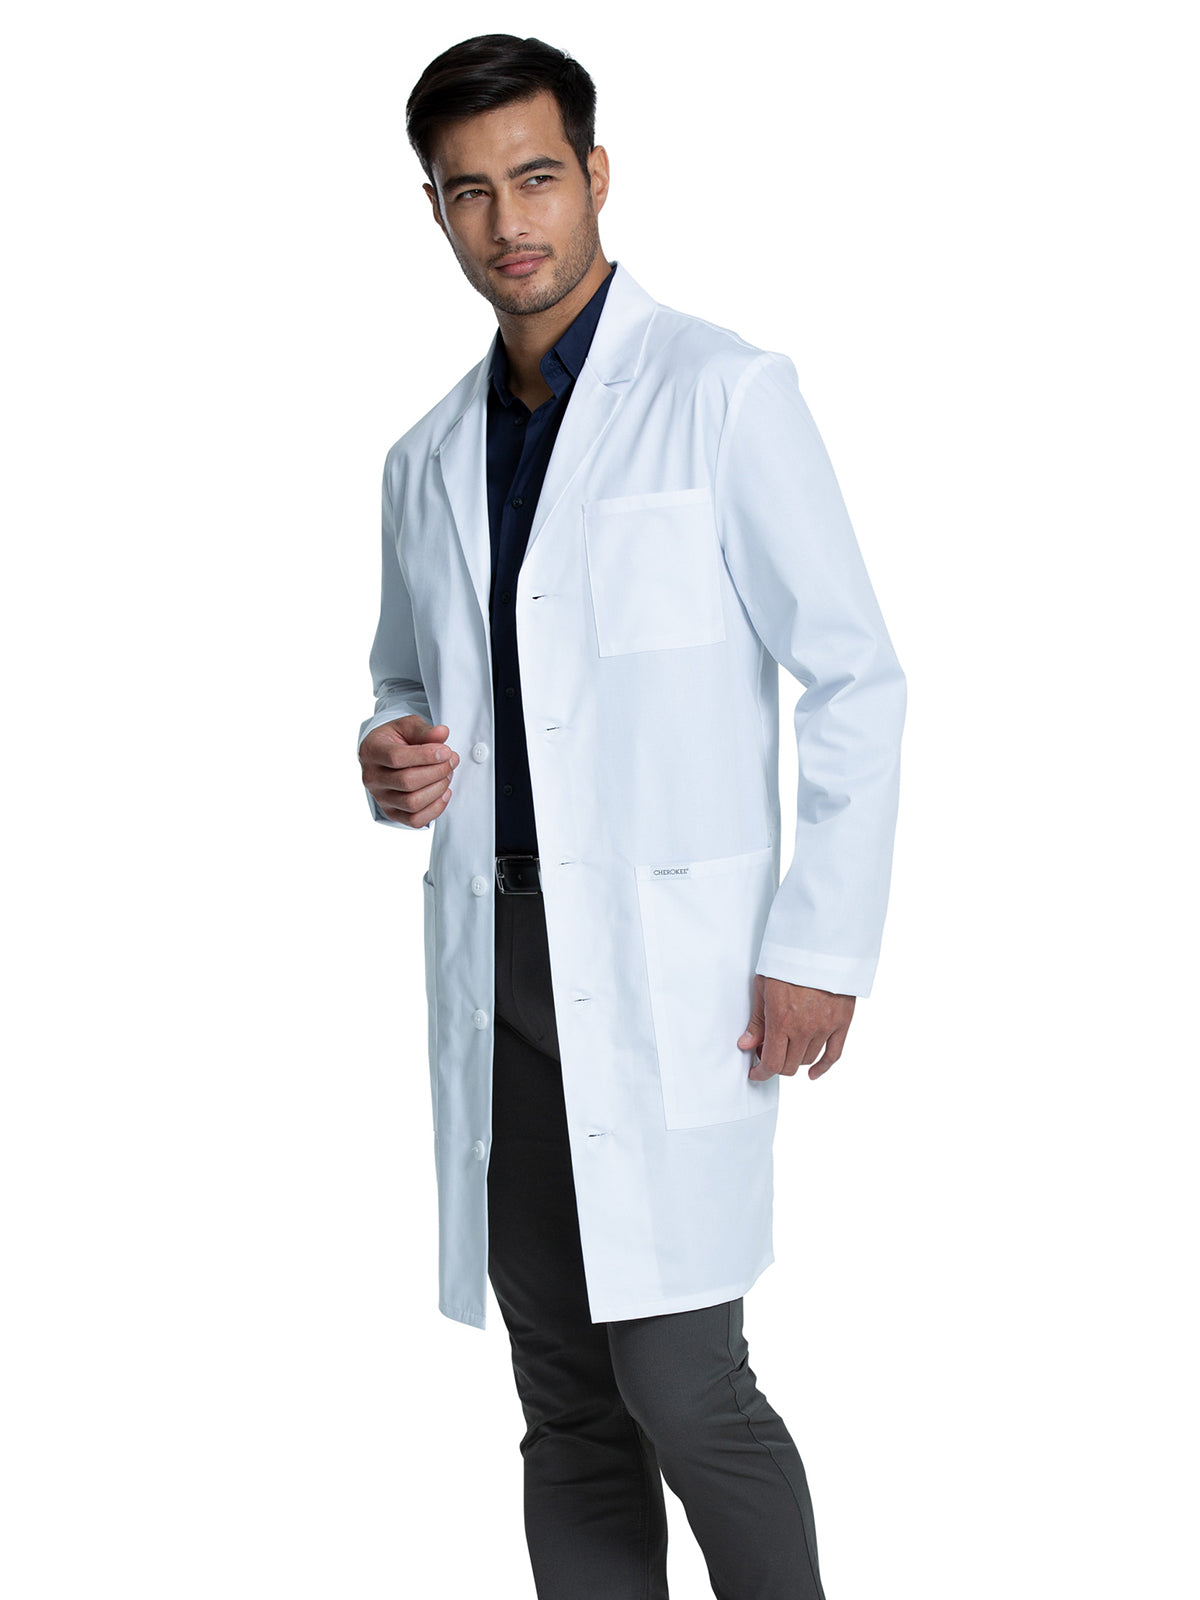 38" Men's Lab Coat